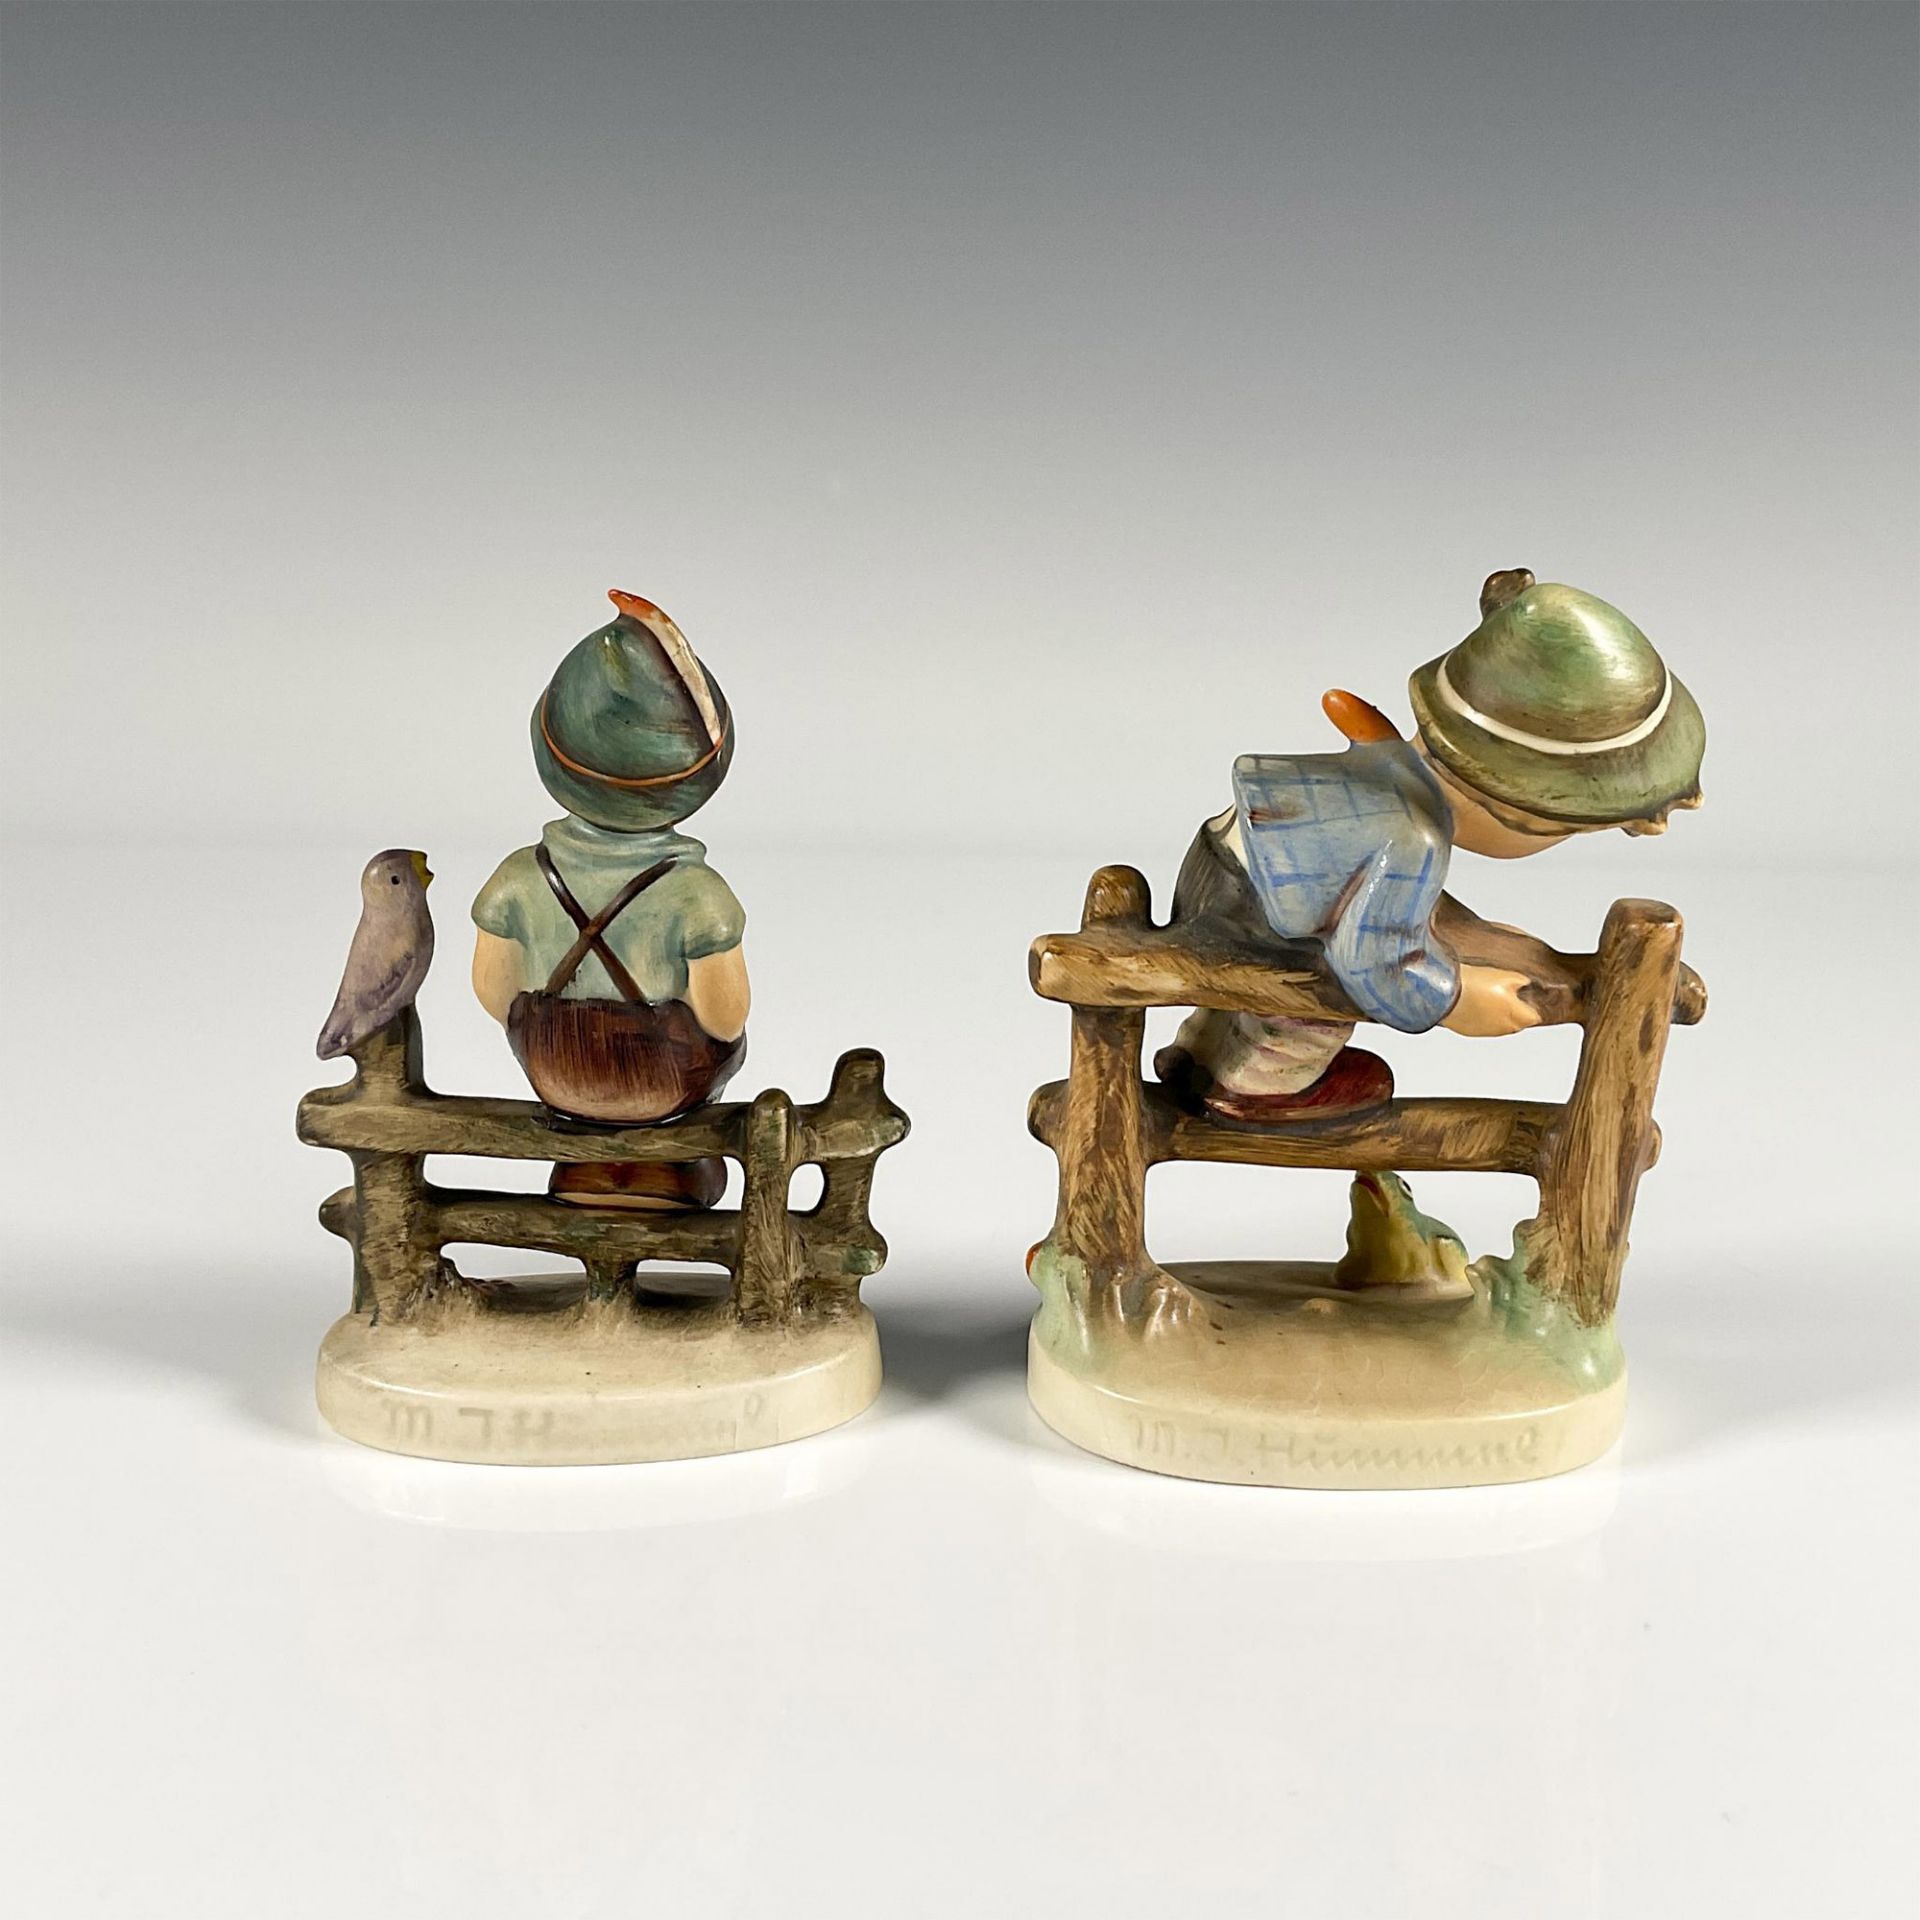 2pc Goebel Hummel Porcelain Figurines - Image 2 of 3